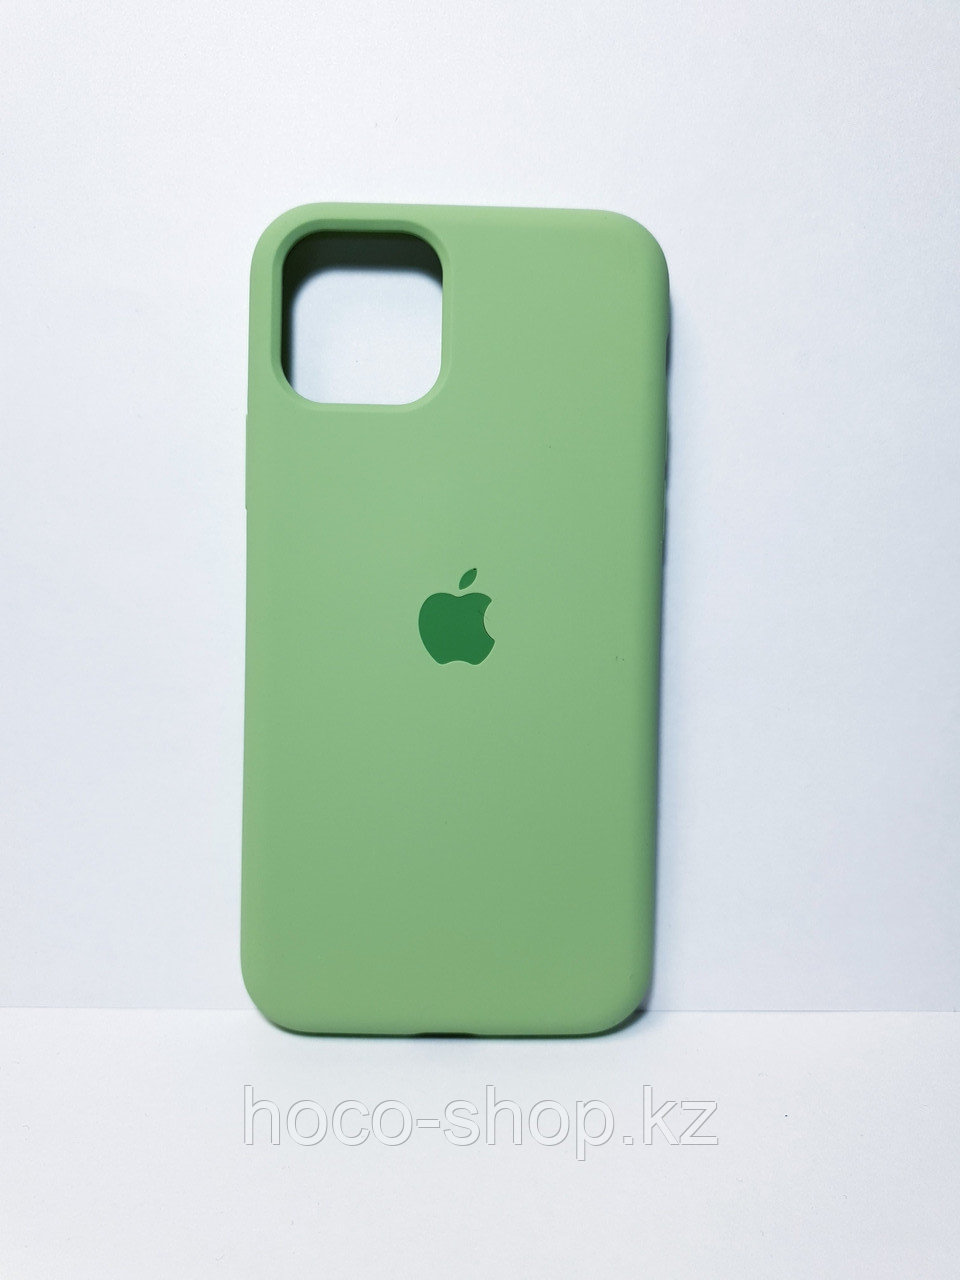 Защитный чехол для iPhone 11 Pro Soft Touch силиконовый, зеленый